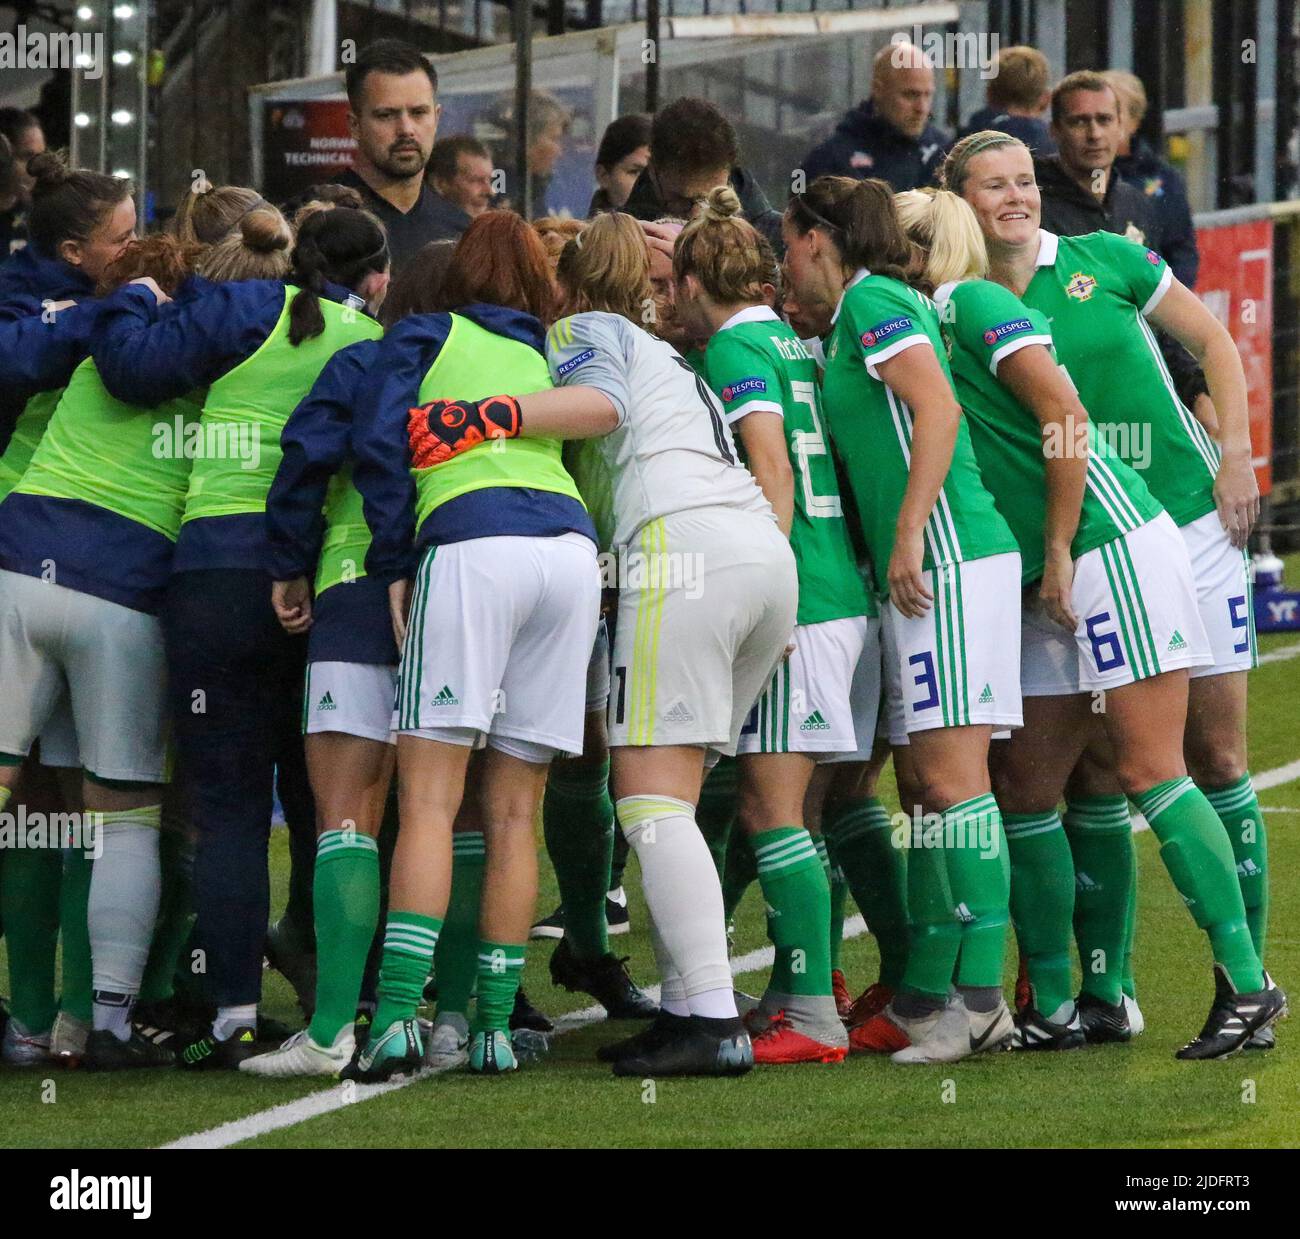 Campeonato Europeo Femenino de la UEFA 2021. 30 de agosto de 2019. Irlanda del Norte 0 Noruega 6 en Seaview, Belfast. El fútbol americano de la Internacional de Mujeres de Irlanda del Norte en un juego antes del despegue. Foto de stock